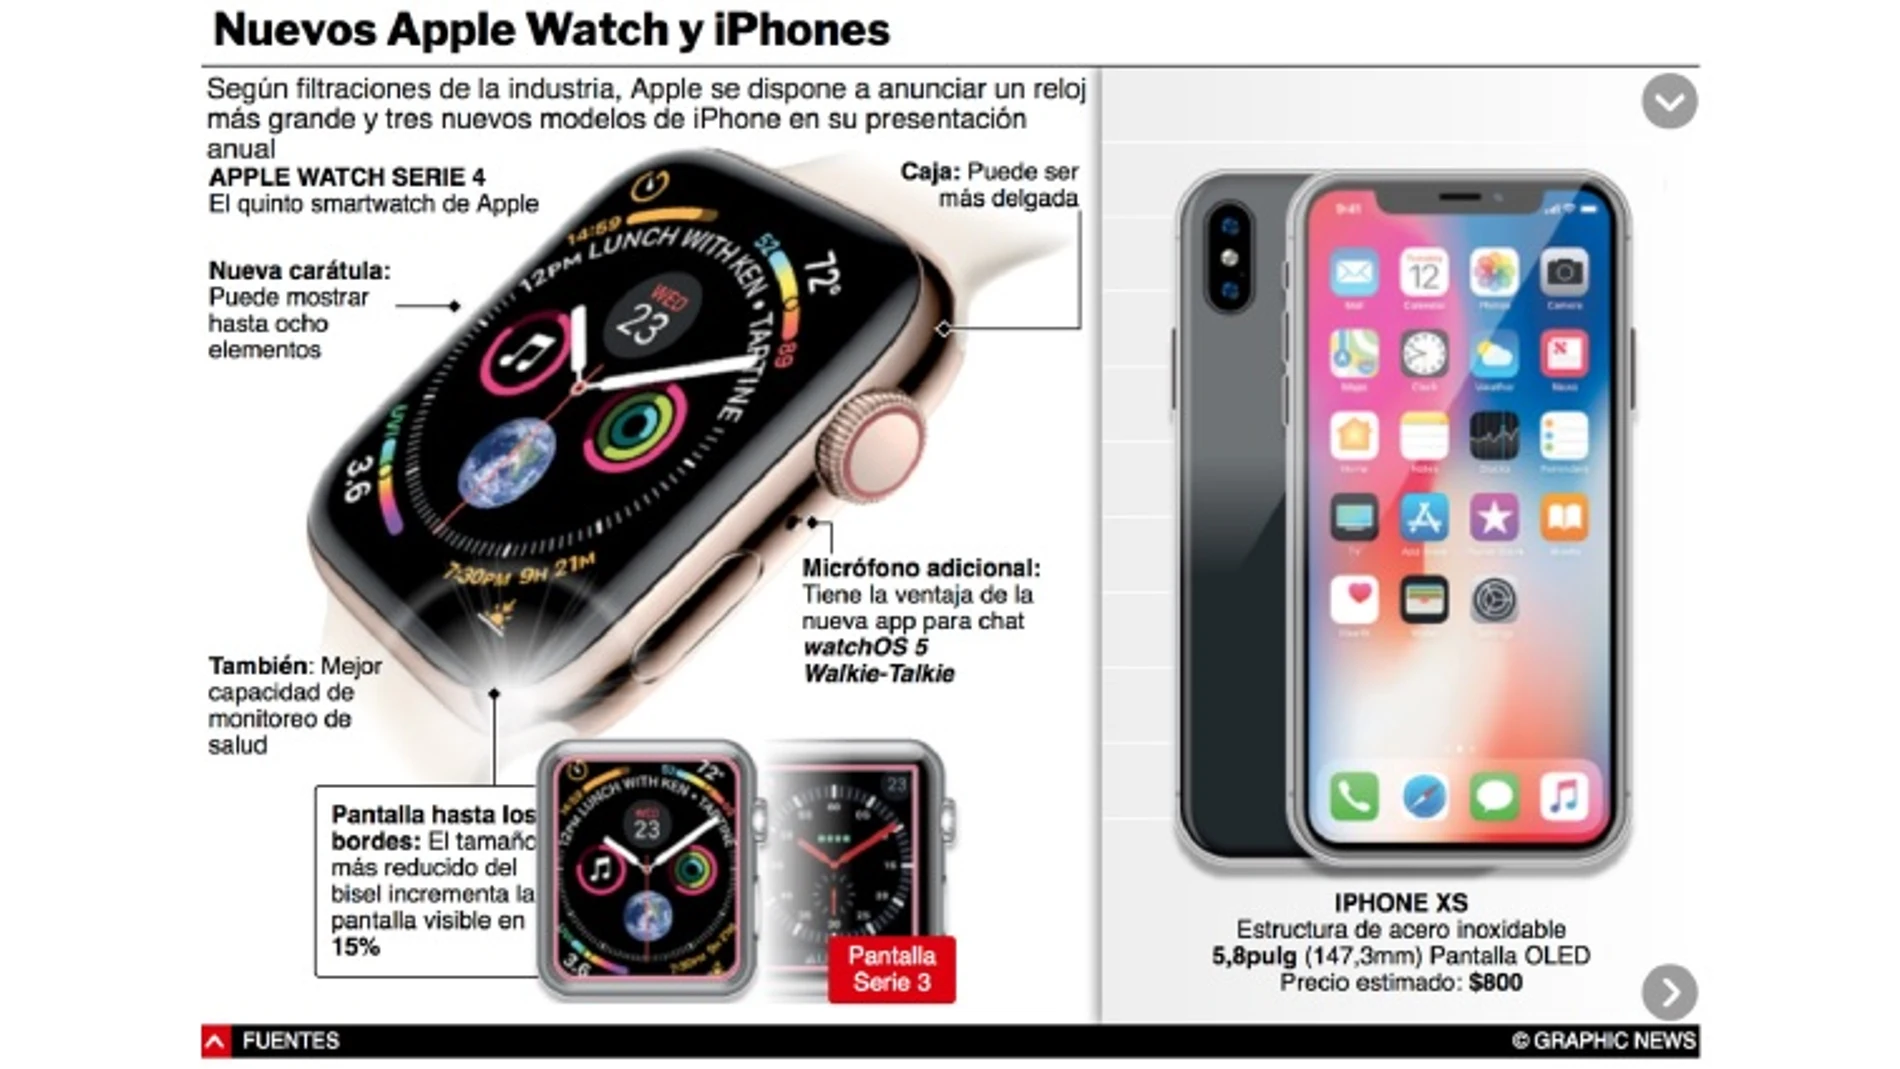 Los nuevos iPhone XS y el Apple Watch 4, principales novedades de Apple para 2018